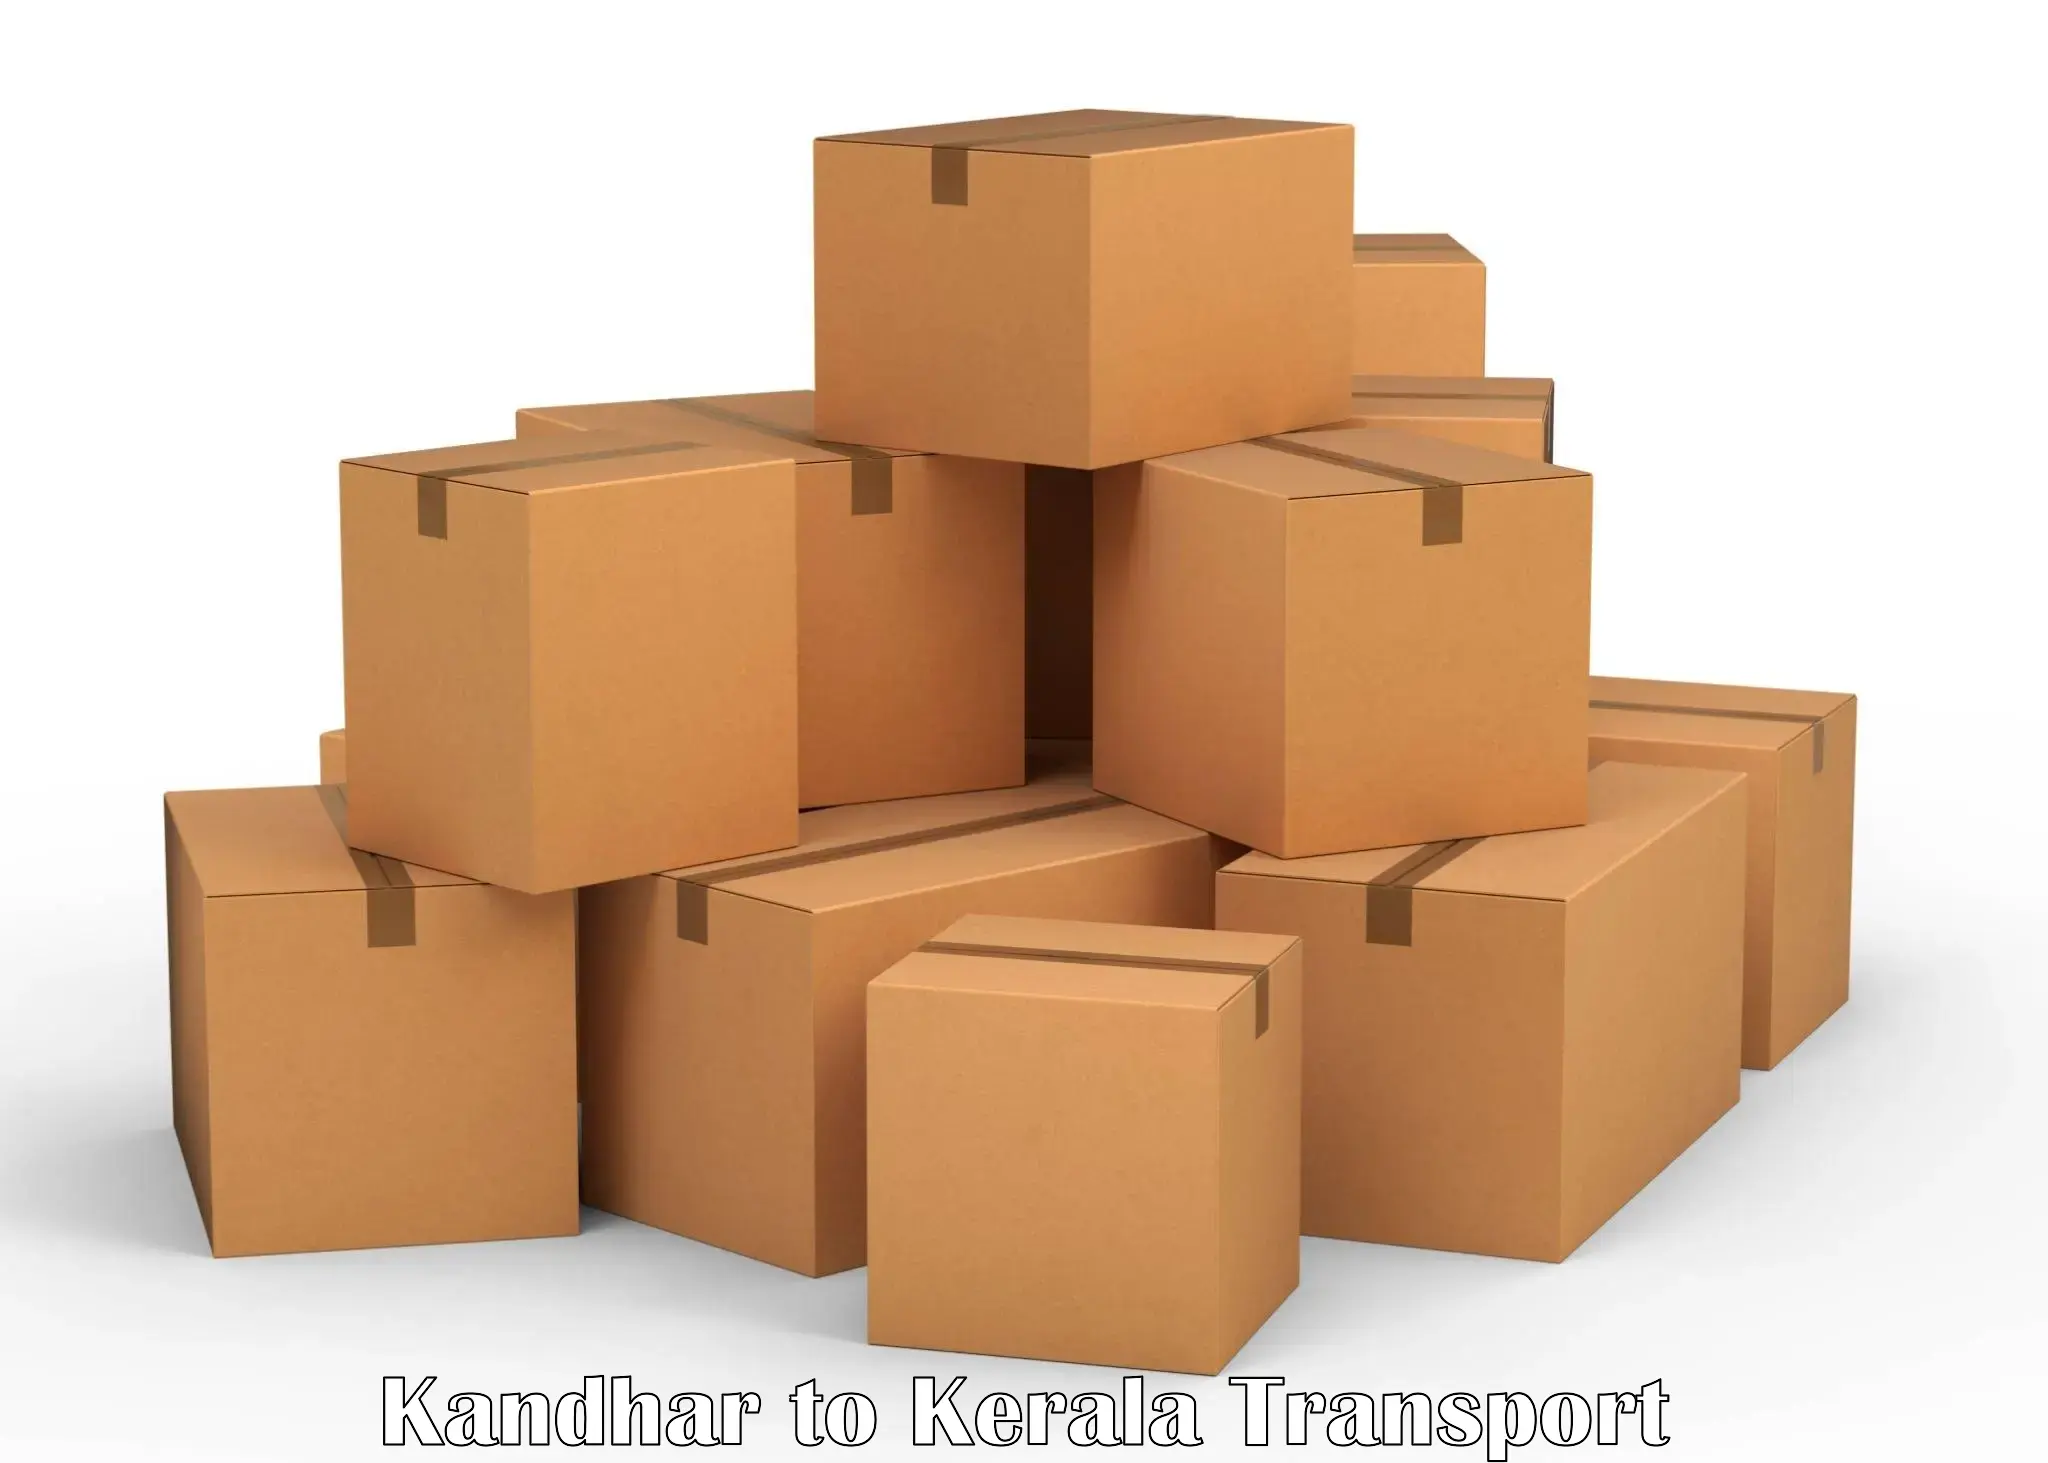 Vehicle transport services Kandhar to Kerala